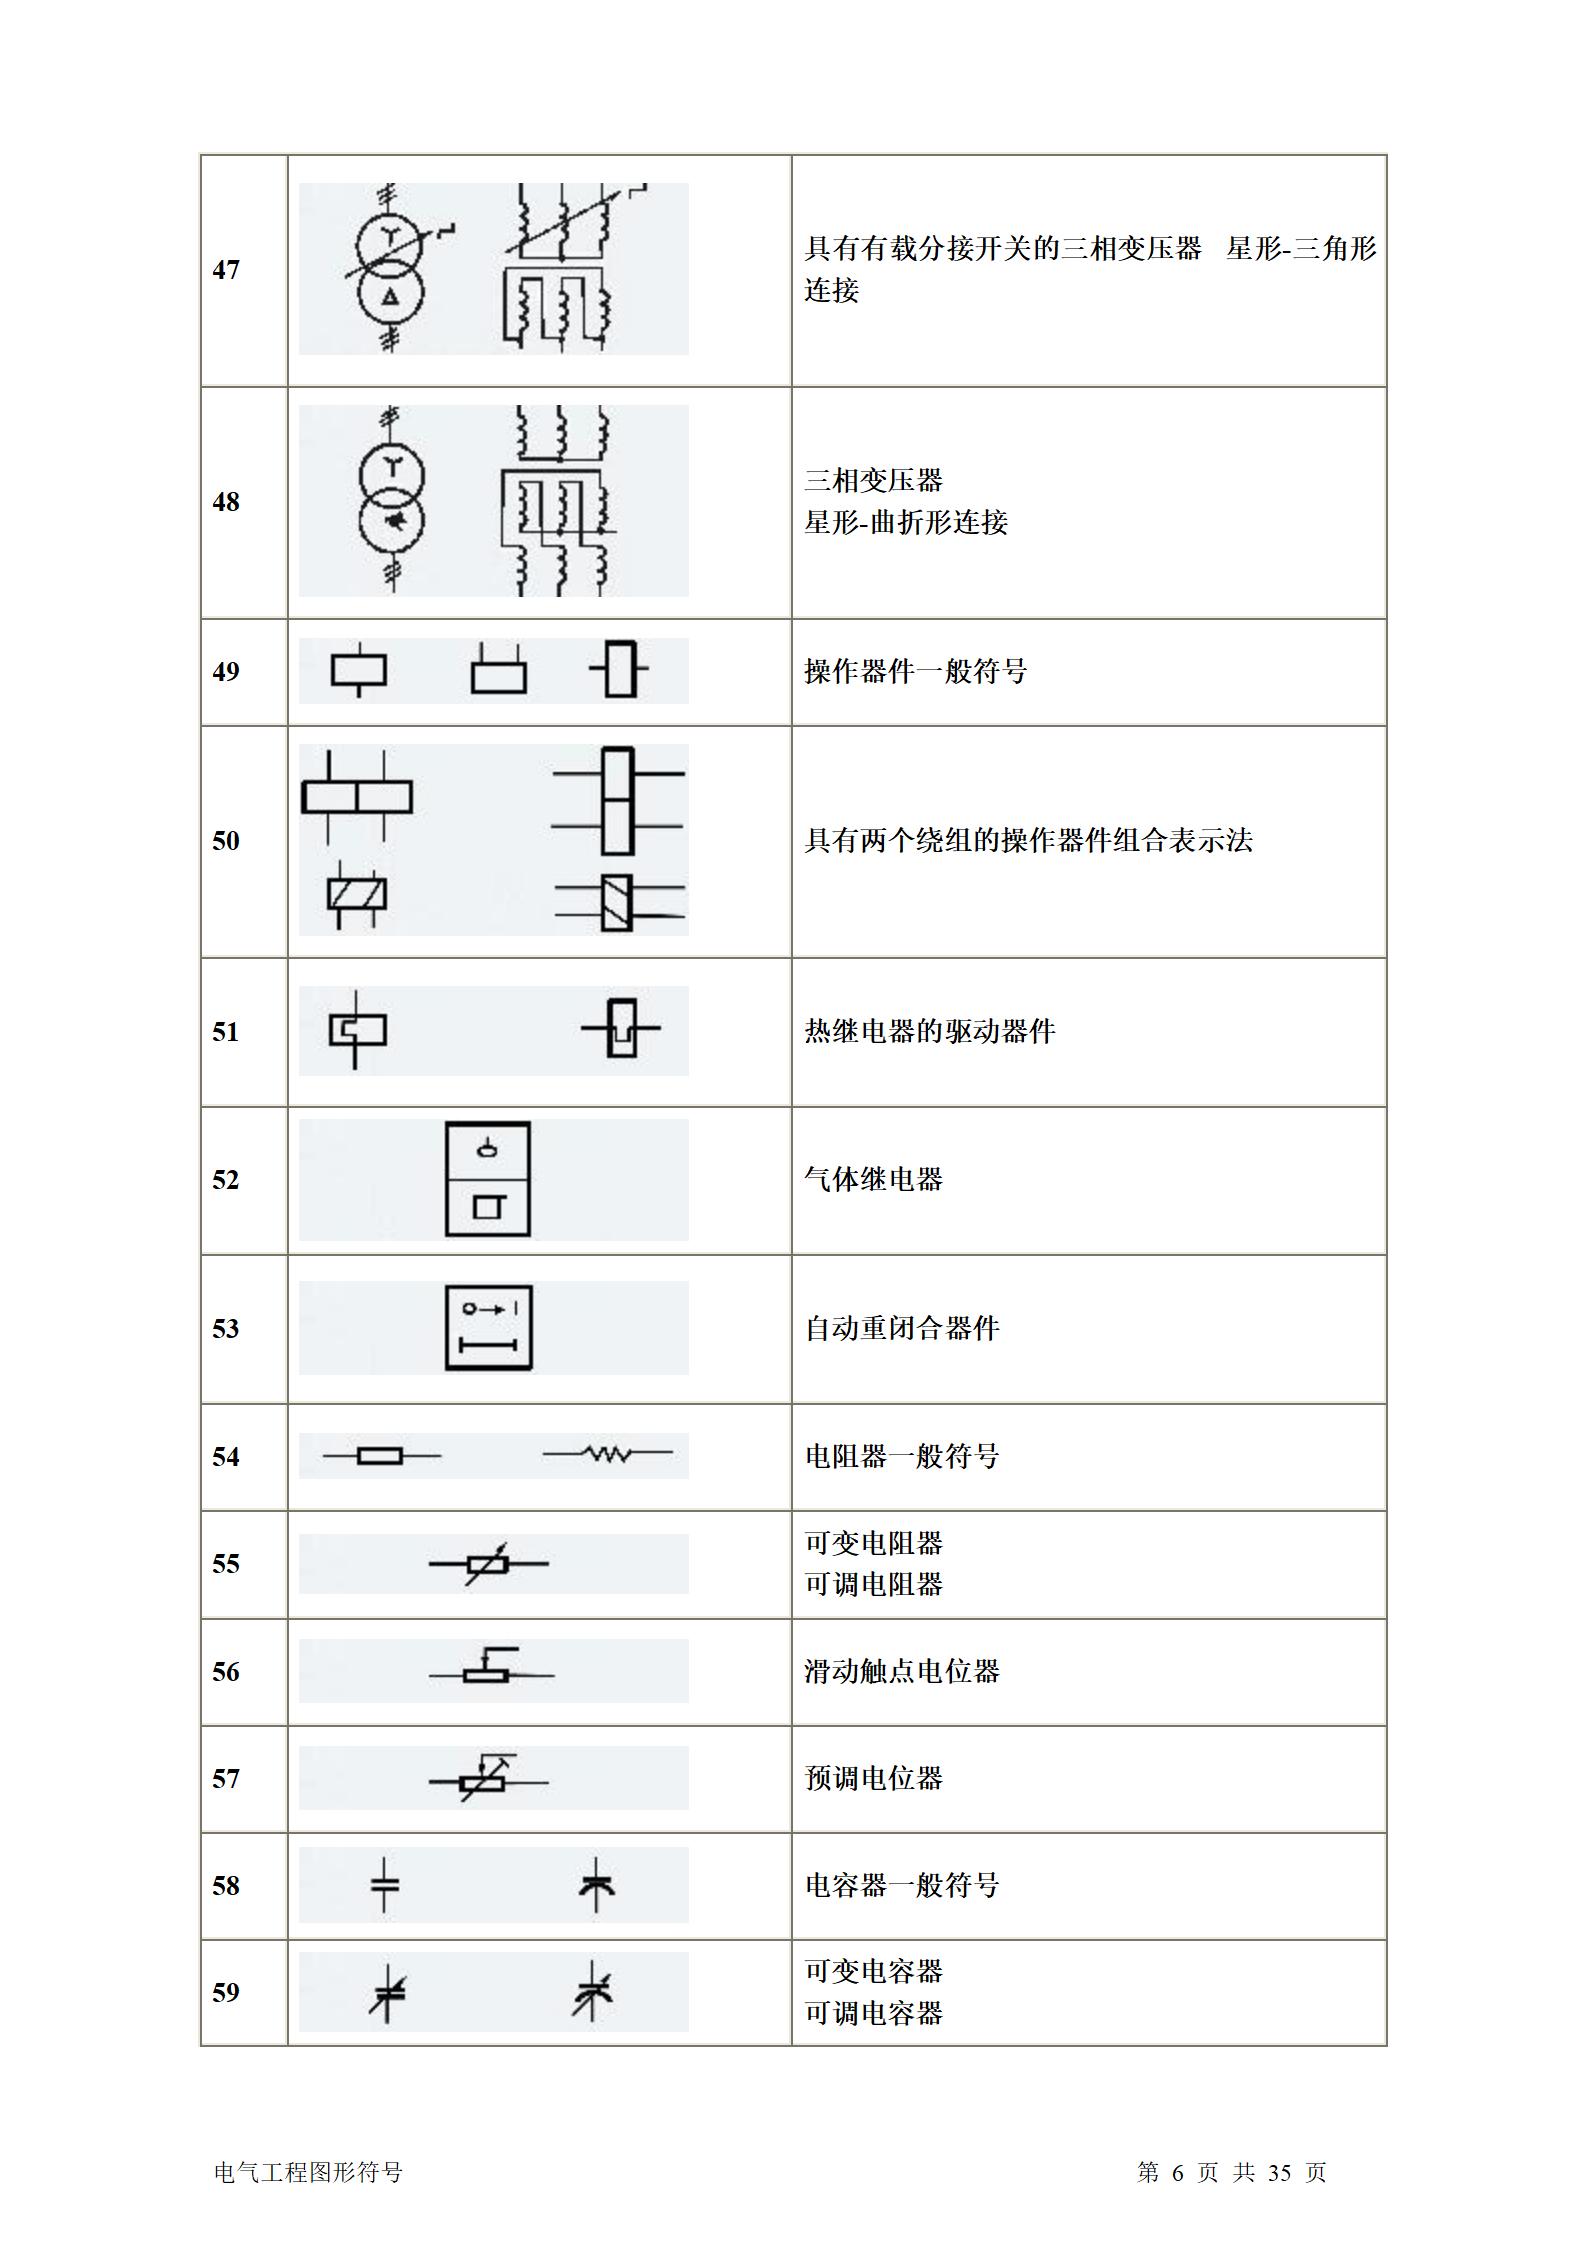 建筑电气、水暖、通风工程图形符号大全word版插图(6)